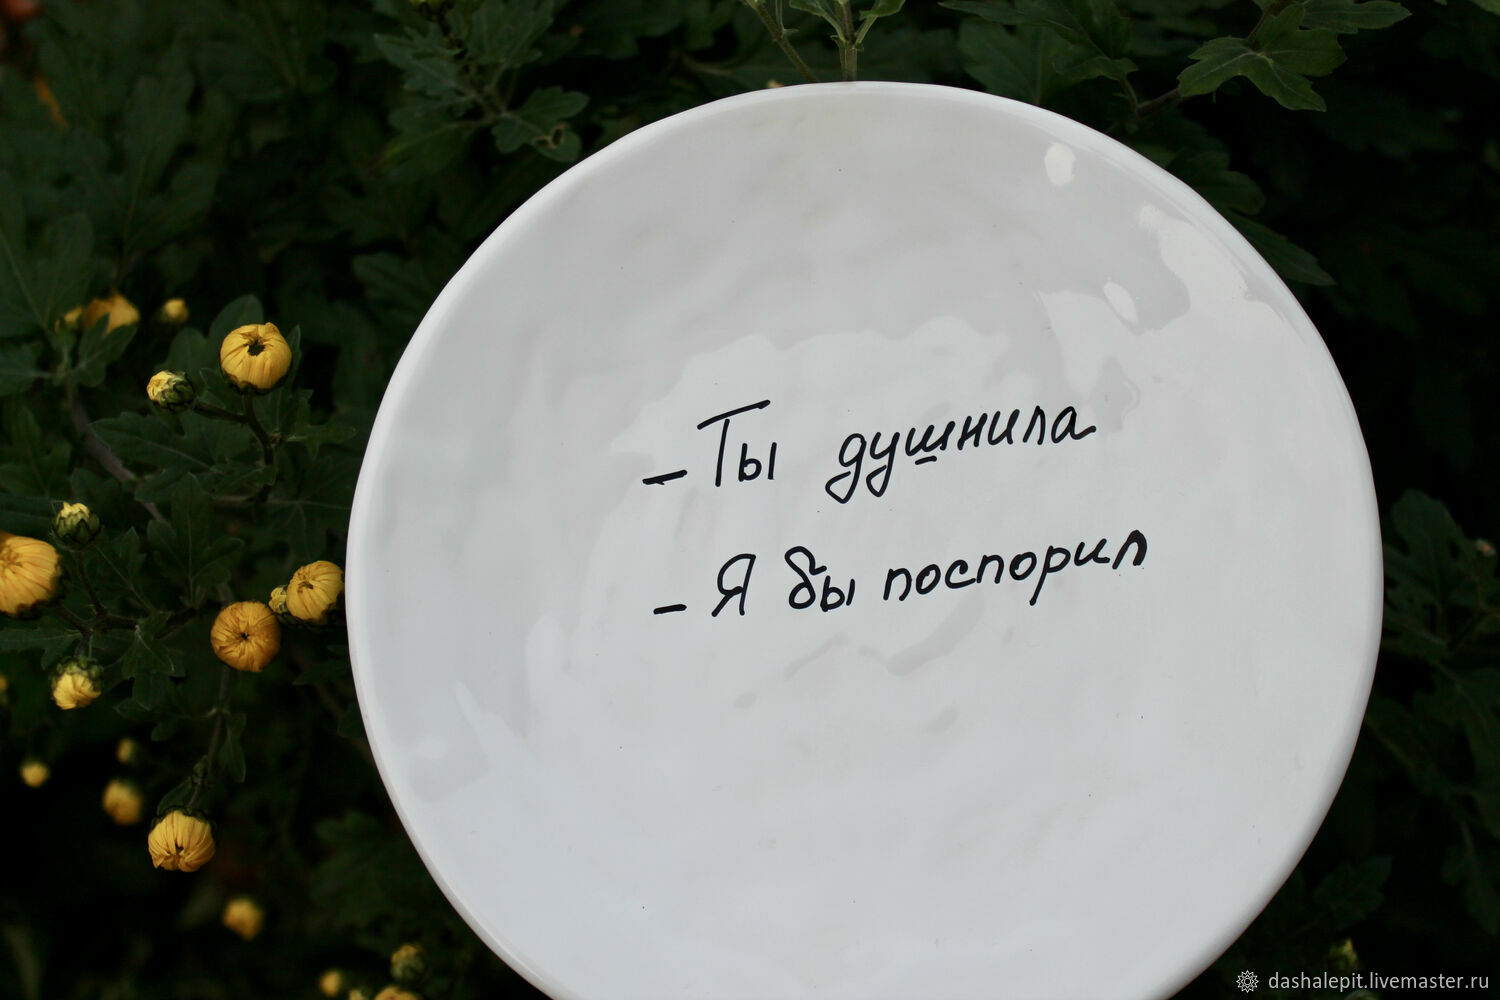 Русский язык на столе стоит тарелка